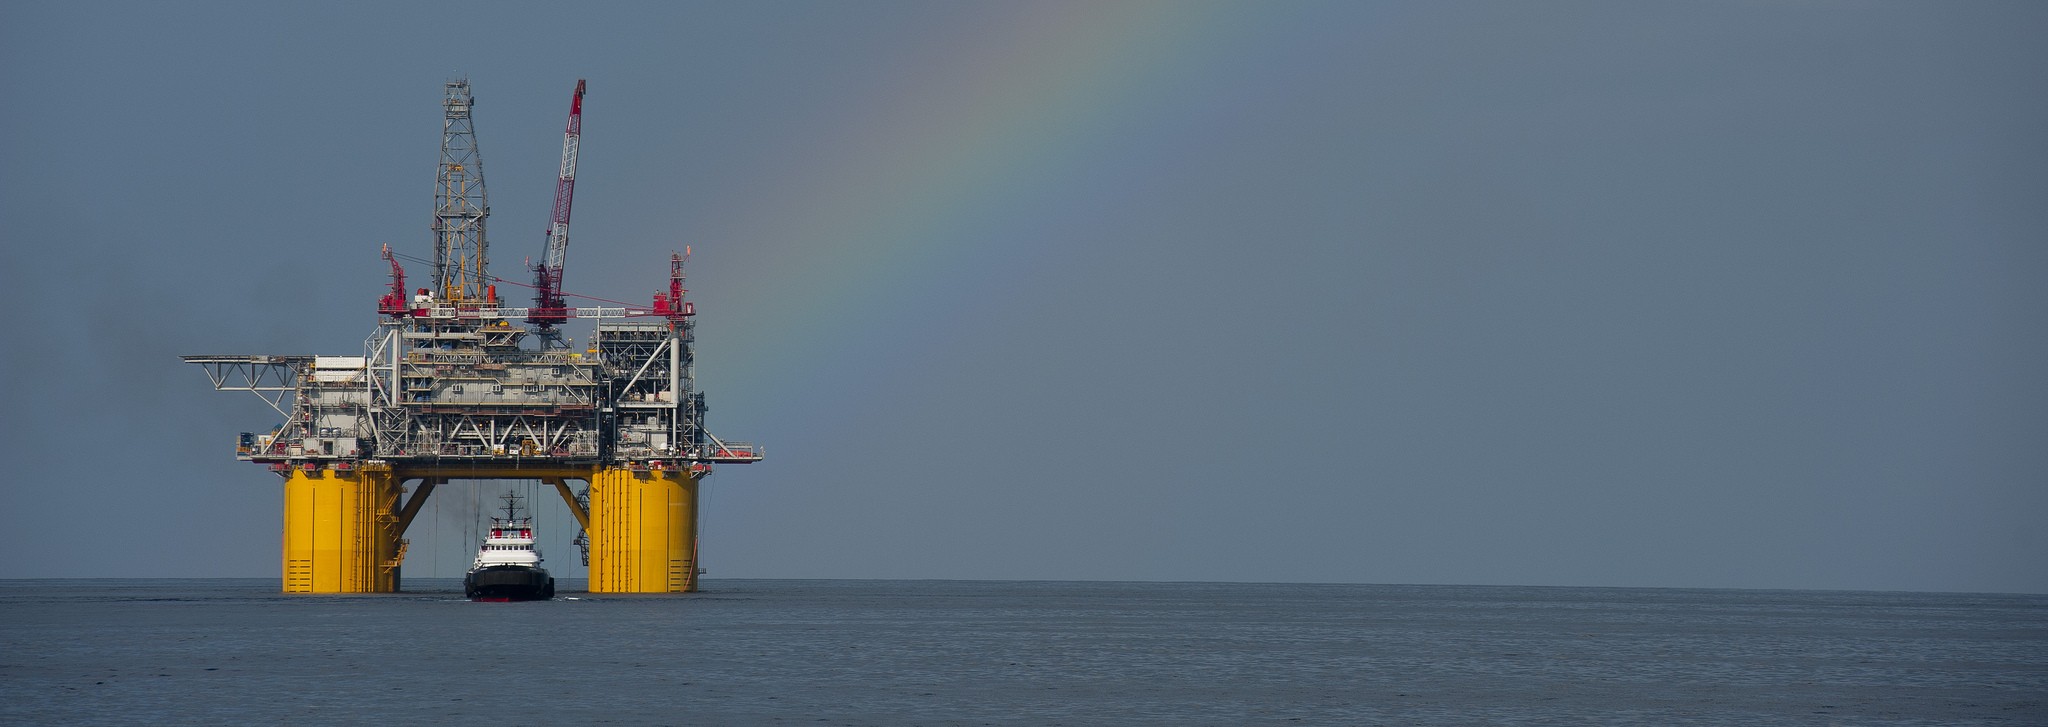 Atlantic drilling